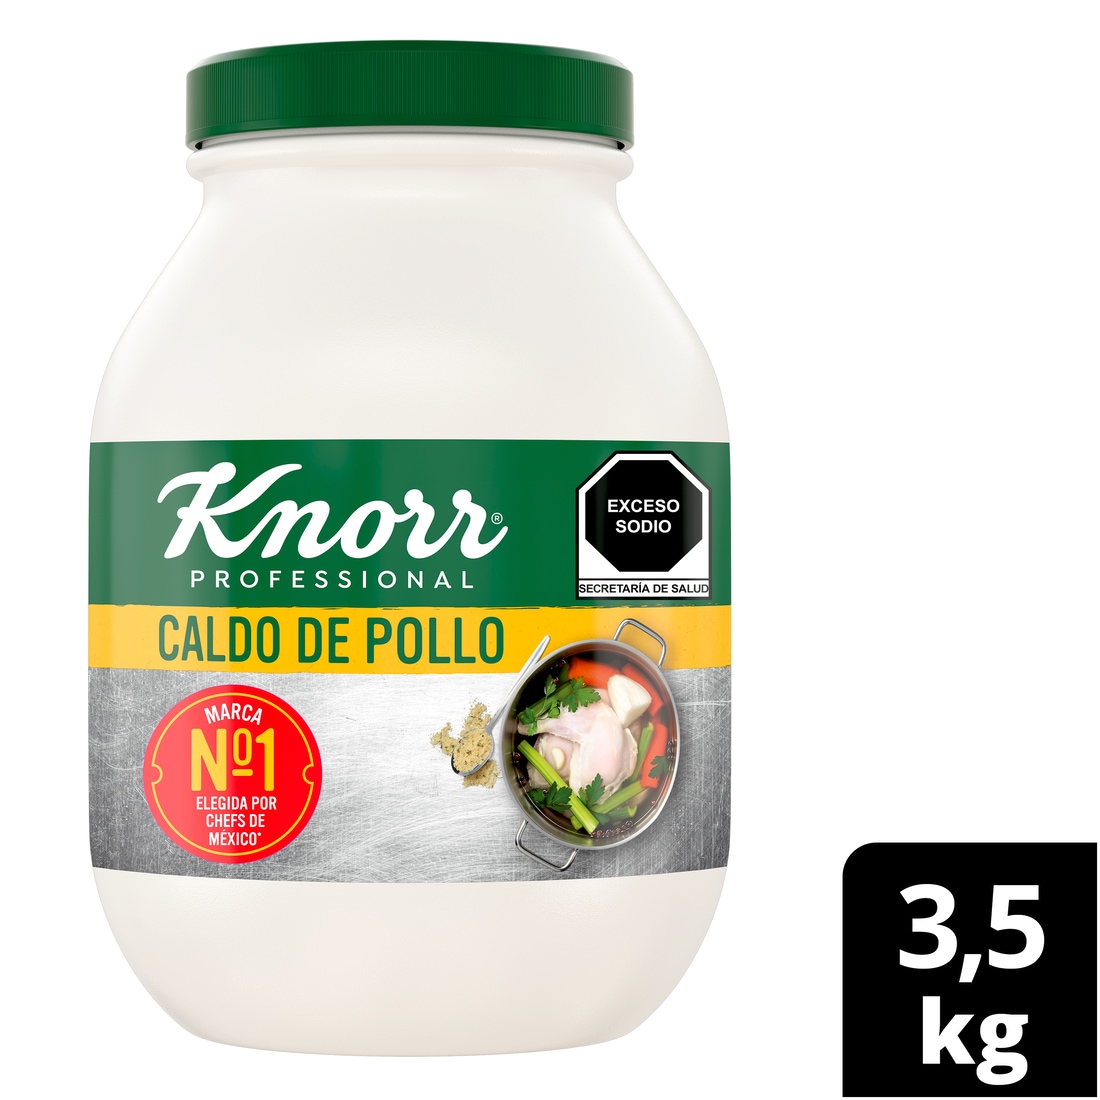 Knorr® Professional Caldo de Pollo 3,5 Kg - Knorr® Professional Caldo de Pollo 3.5  kg, receta con hierbas y especias seleccionadas e inigualable sabor a pollo.